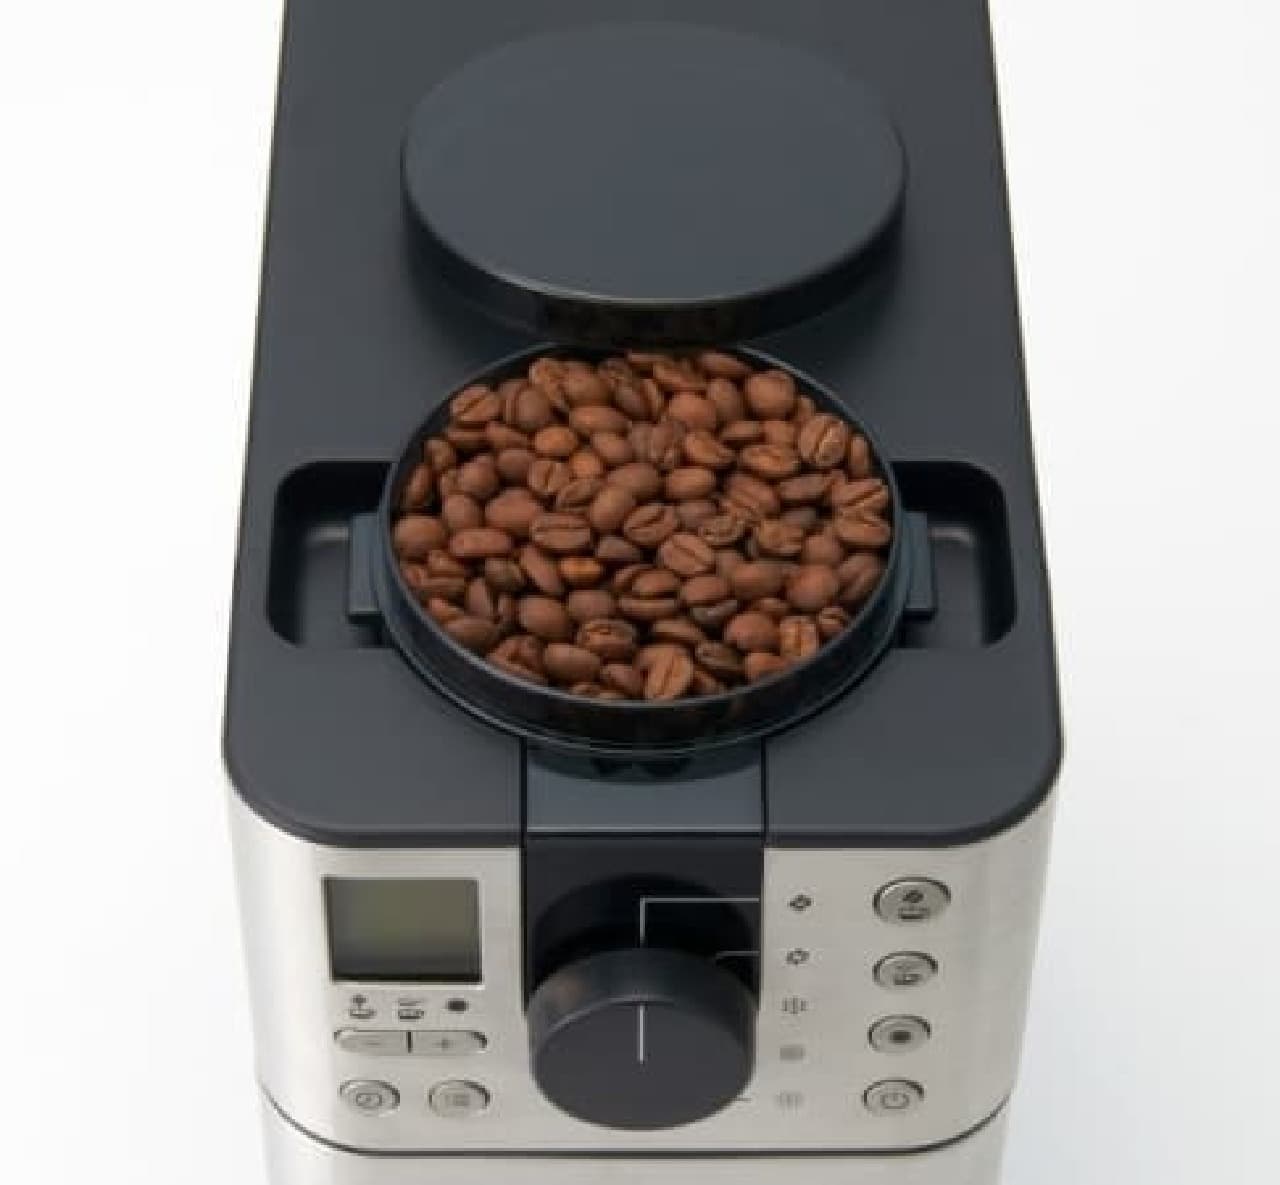 無印良品」から全自動コーヒーメーカー--一杯ごとに挽きたて、タイマー 